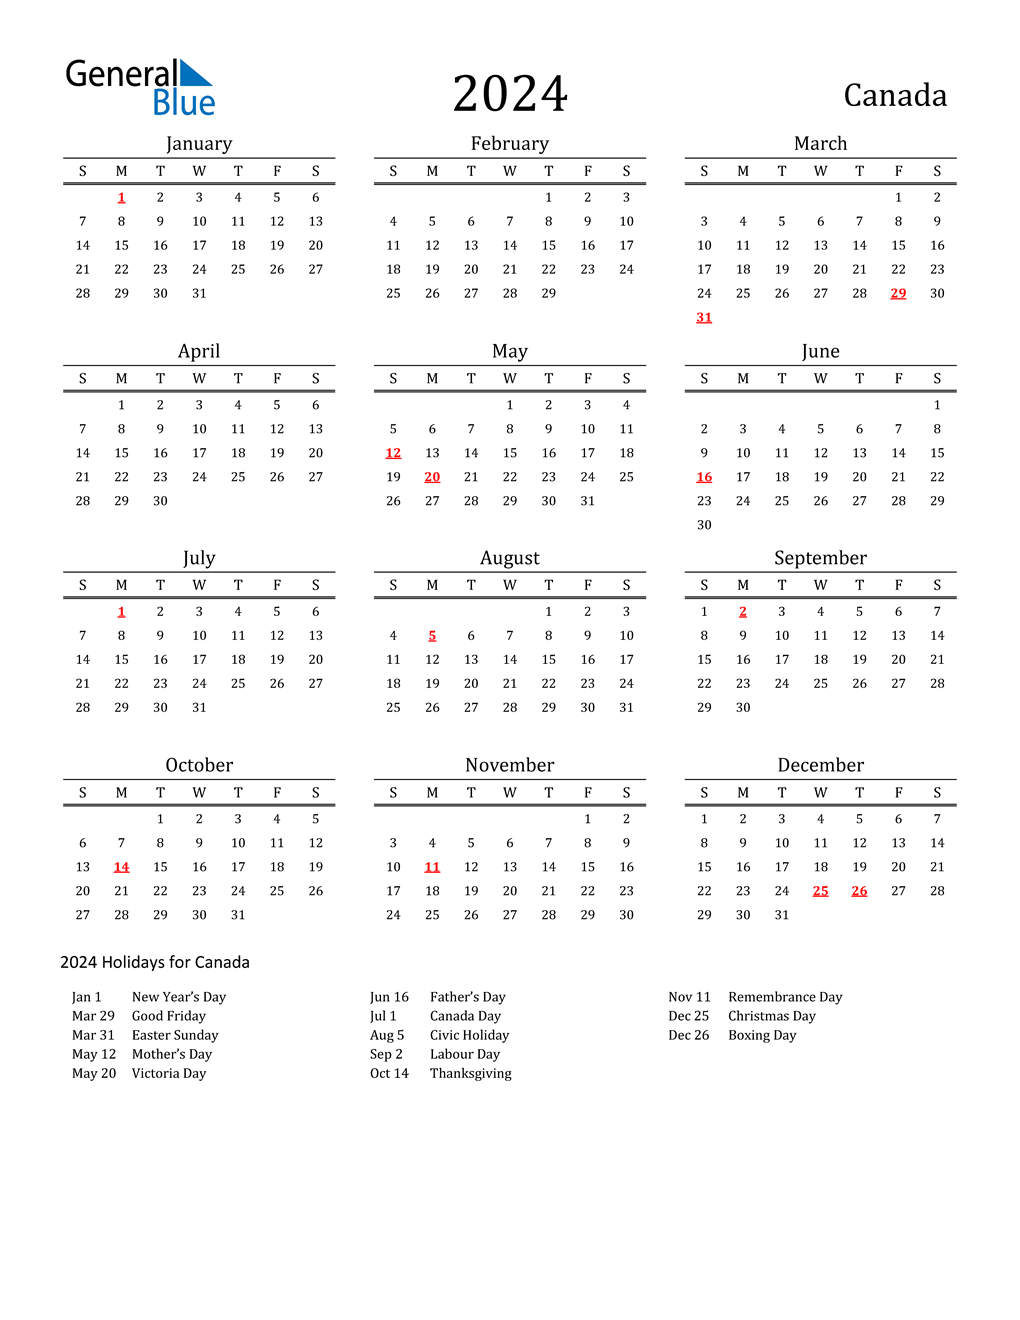 Federal Holidays 2024 Calendar 2024 Calendar Canada 2024 Calendar - Free Printable 2024 Canada Calendar With Holidays